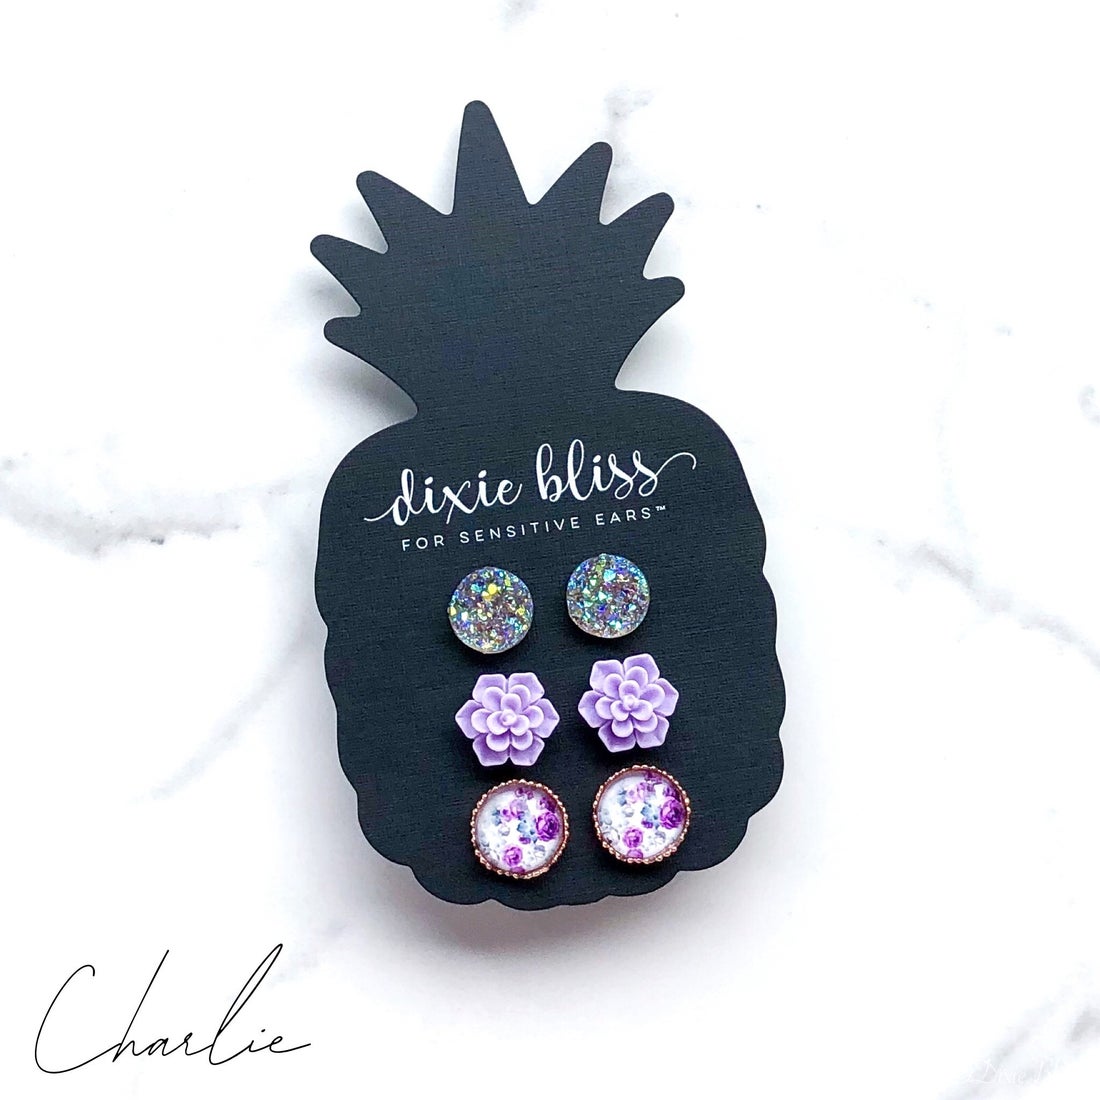 Dixie Bliss Earrings: Charlie